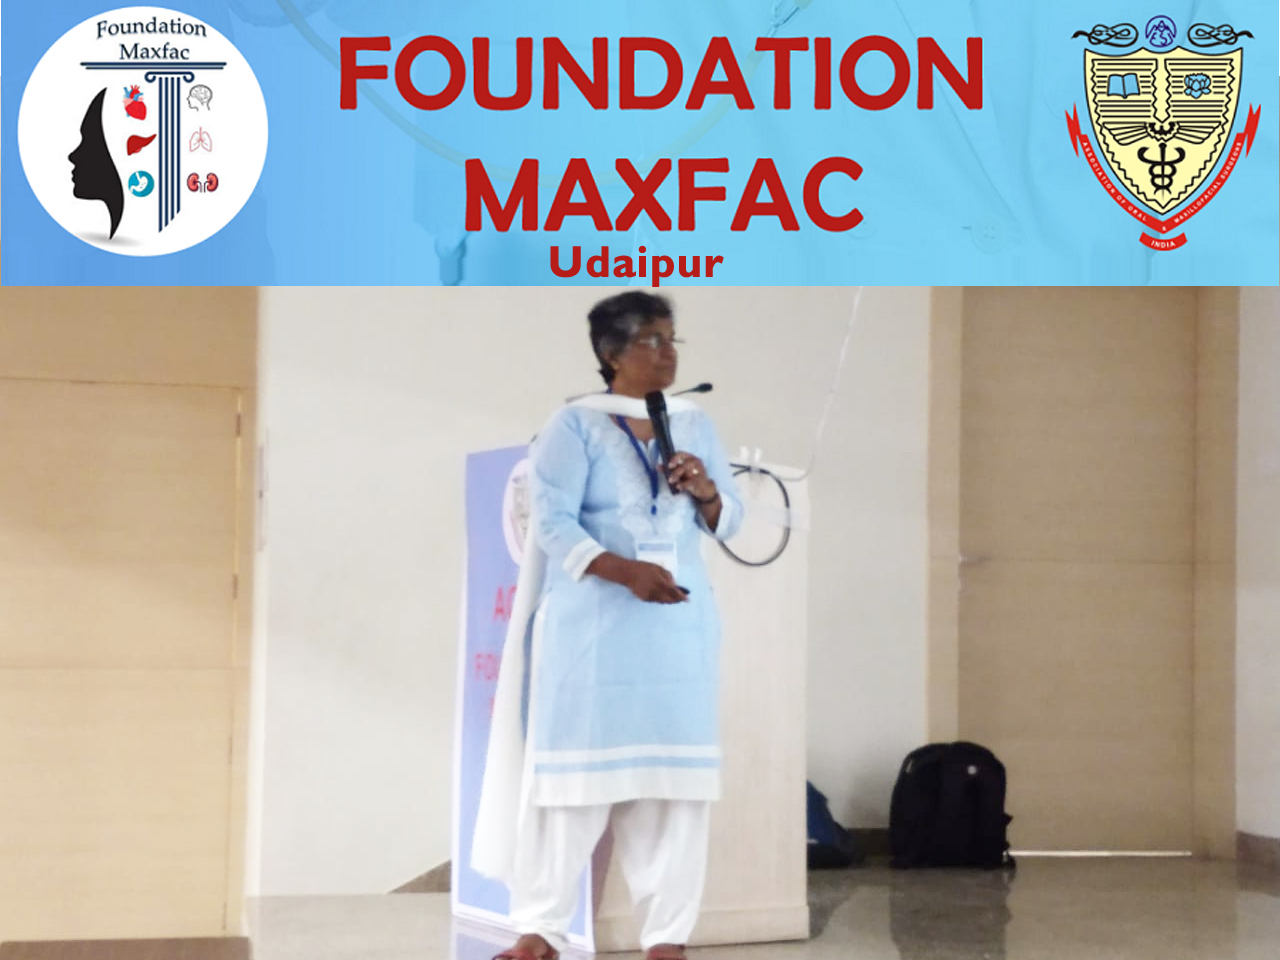 Foundation MaxFac - Udaipur